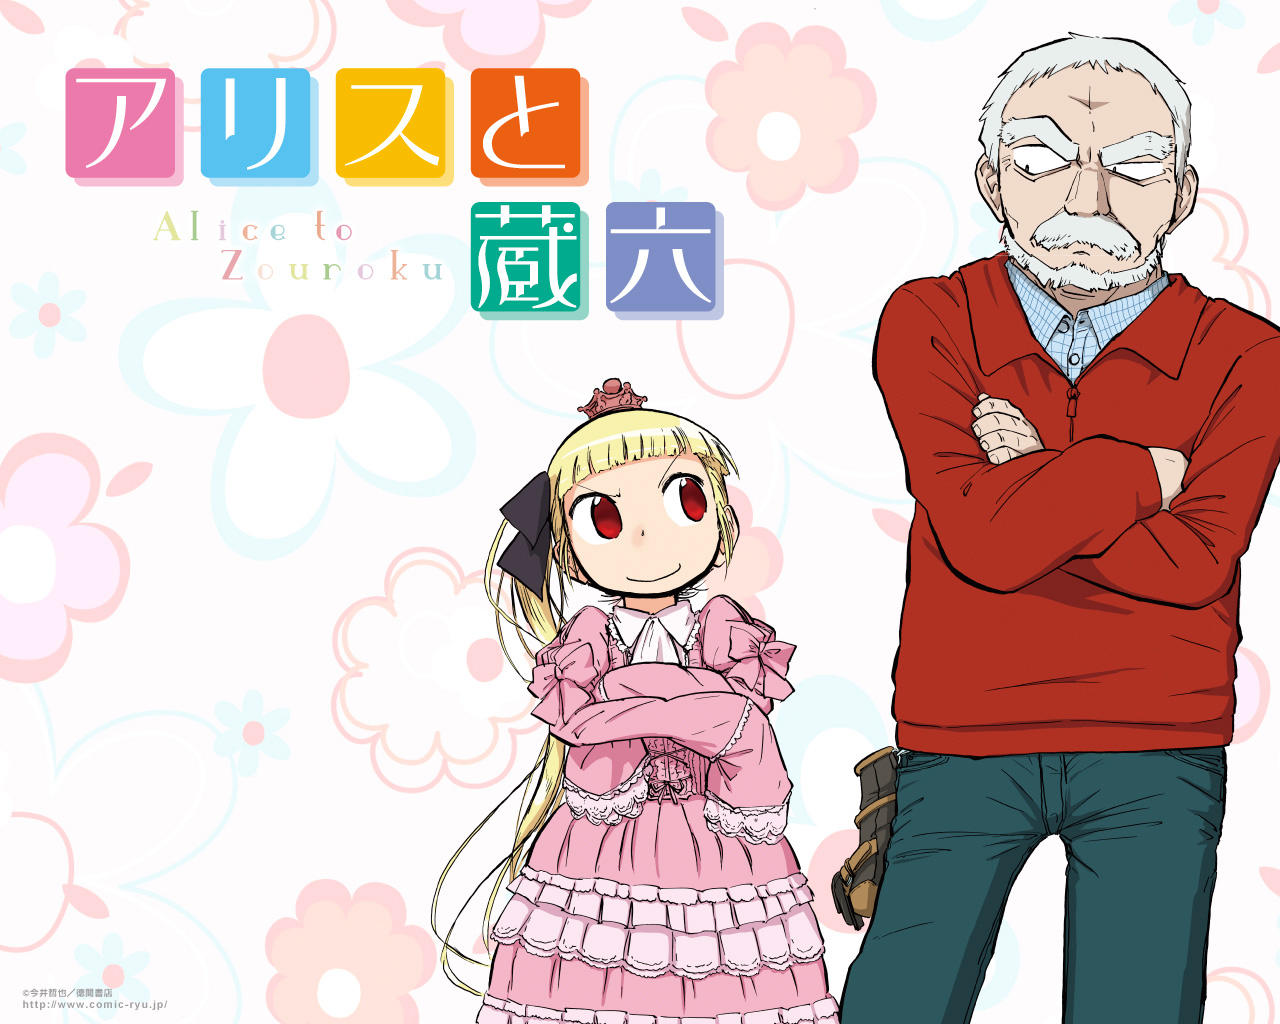 Alice to Zouroku - grafika reklamująca anime